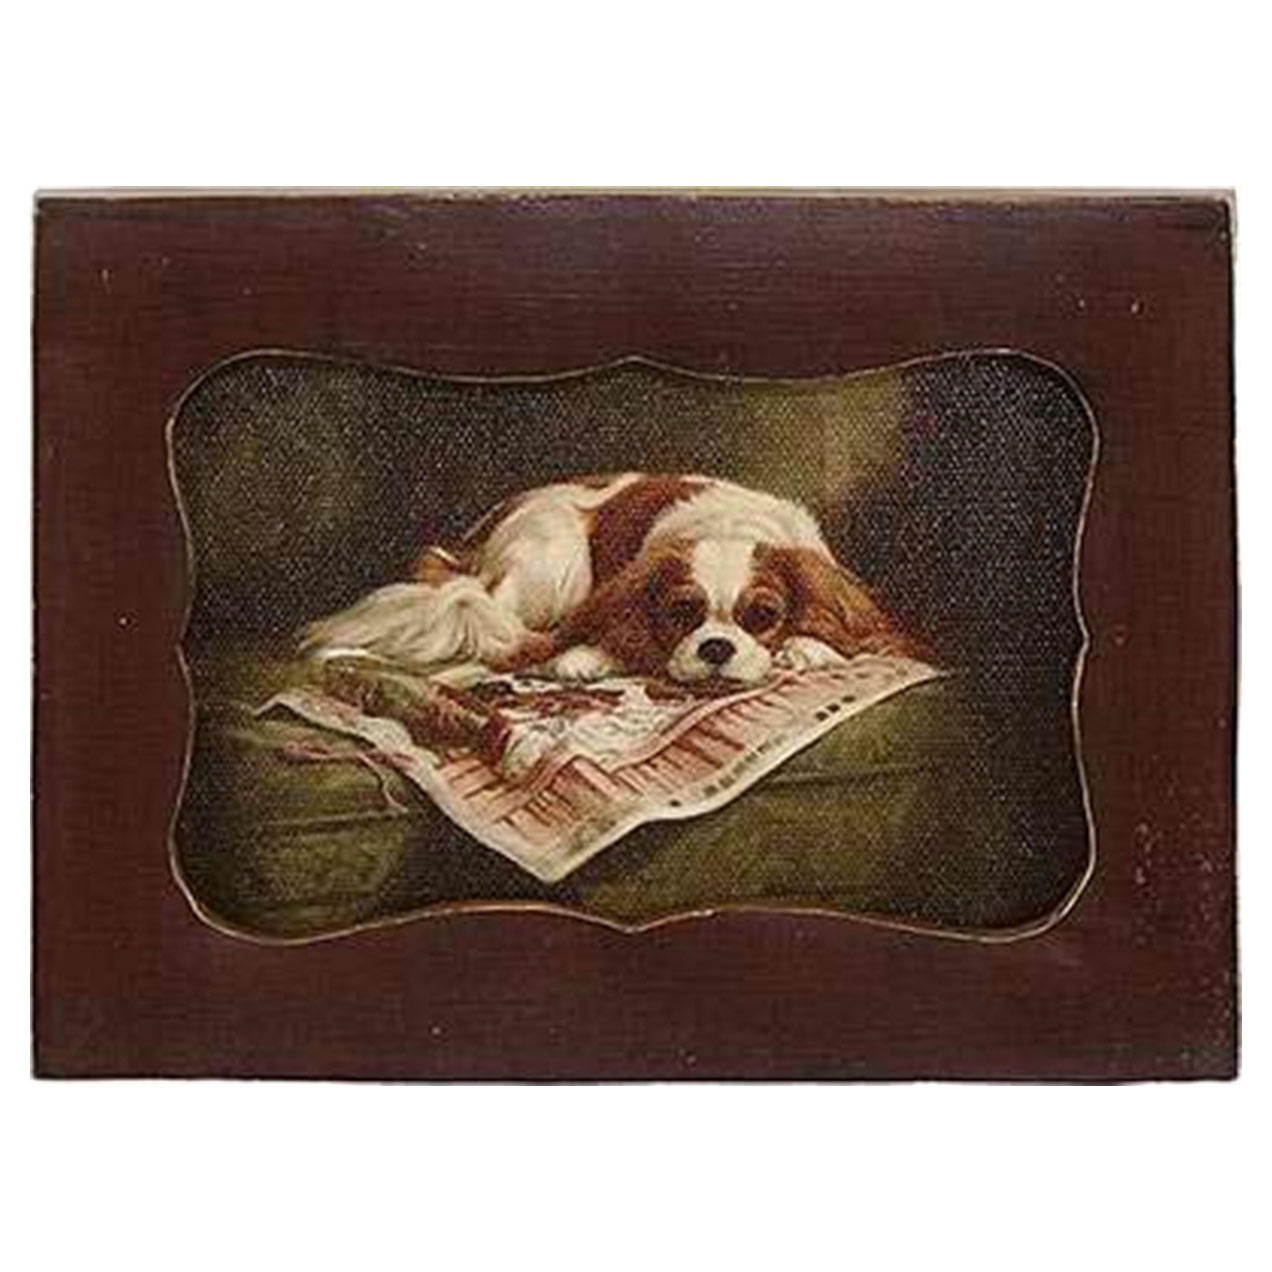 Картина в прямоугольной раме Glasar, спящая собака, масло, 10x2x12 см картина в раме glasar масло 17x1x17см